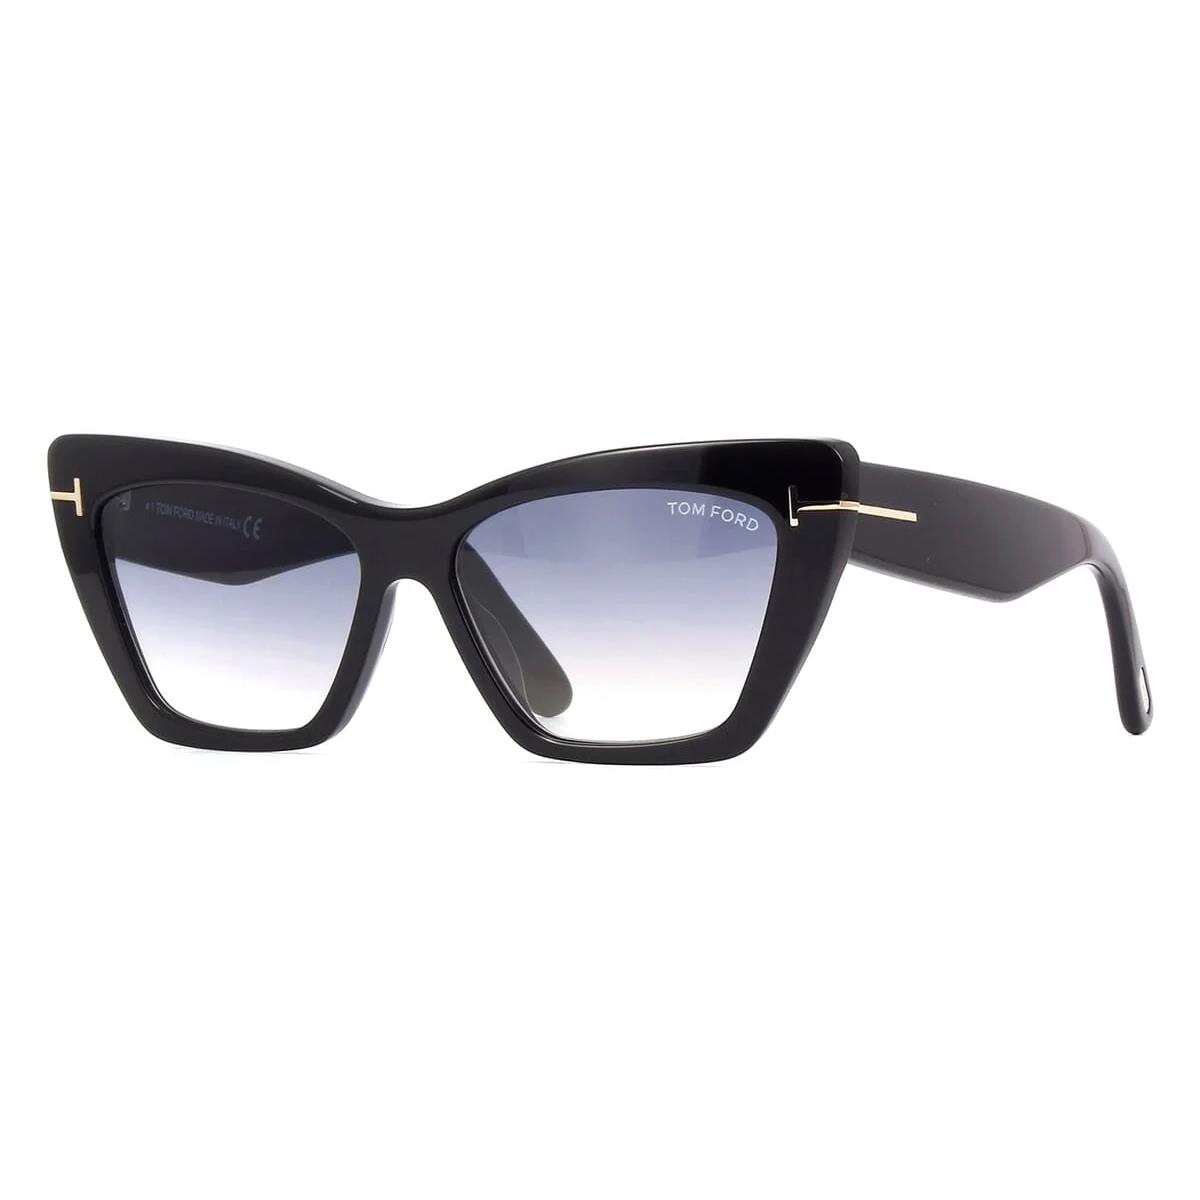 Tom Ford Sunglasses TF871 01B Wyatt Black Frame Gray Lens 56MM